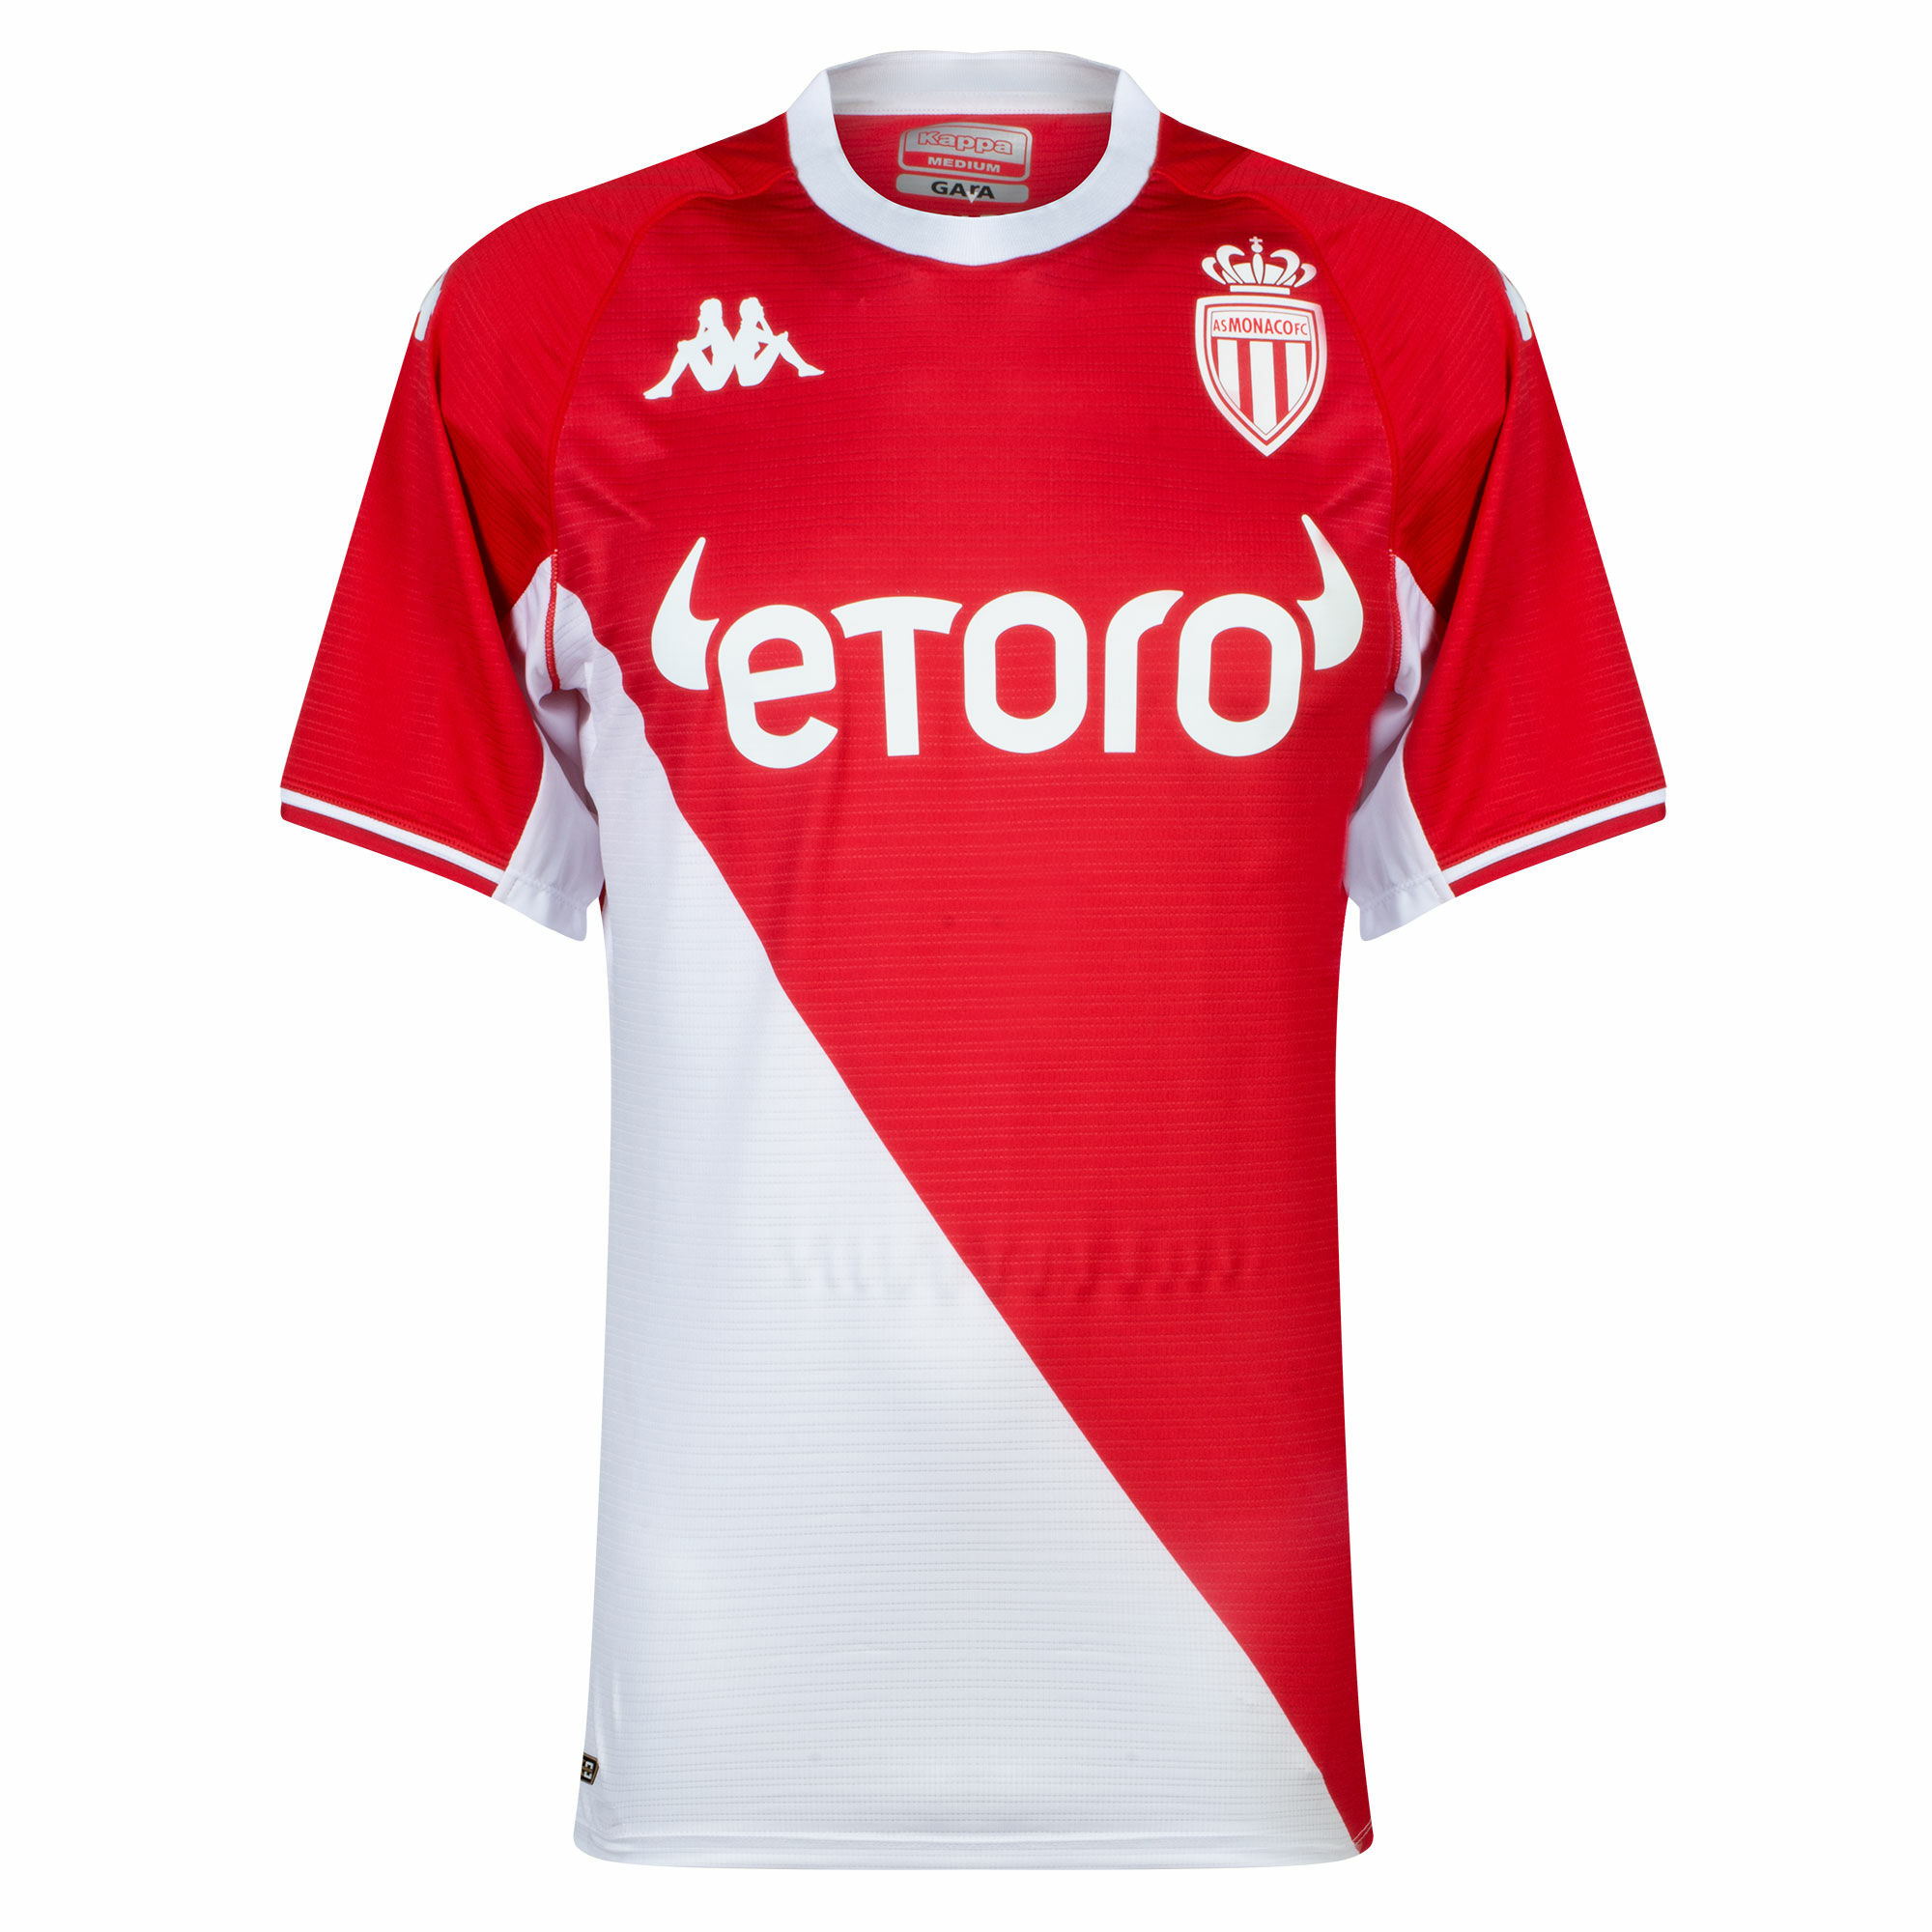 AS Monaco - Košile - sezóna 2021/22, bíločervená, obtažená, domácí, autentická